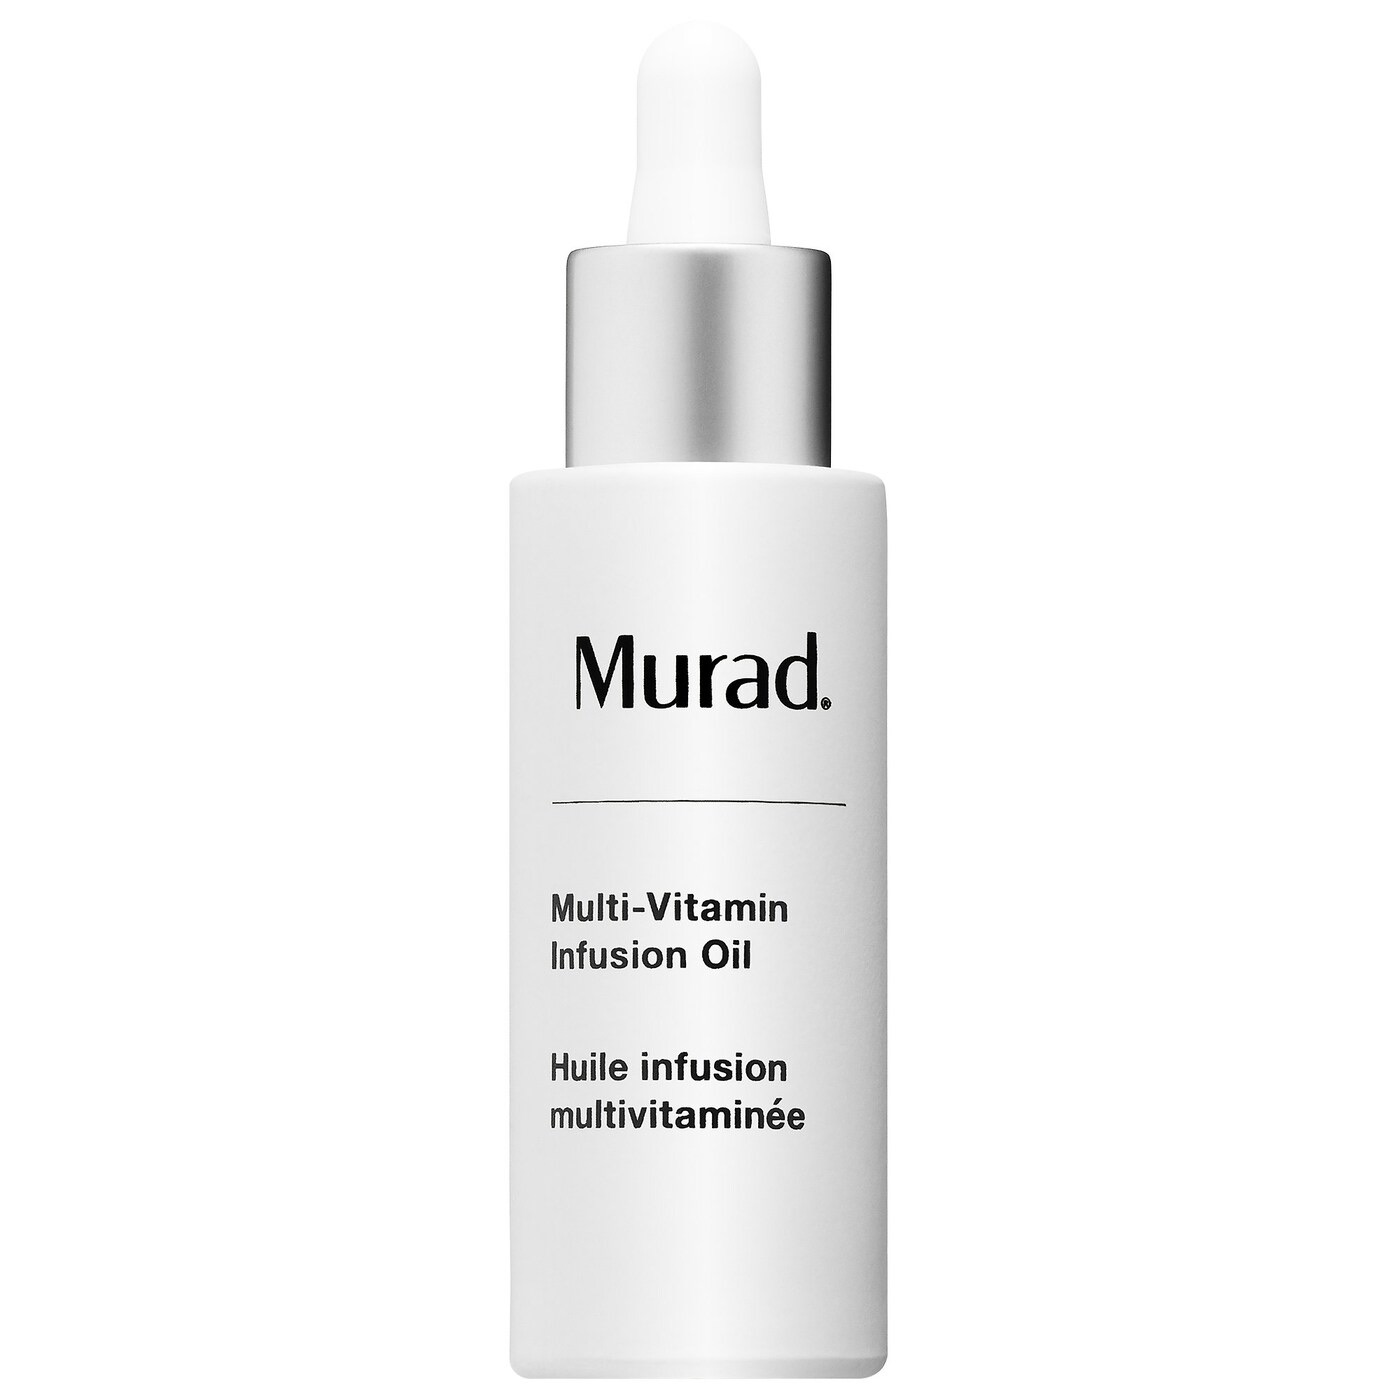 Murad Multi-Vitamin Infusion Oil 2